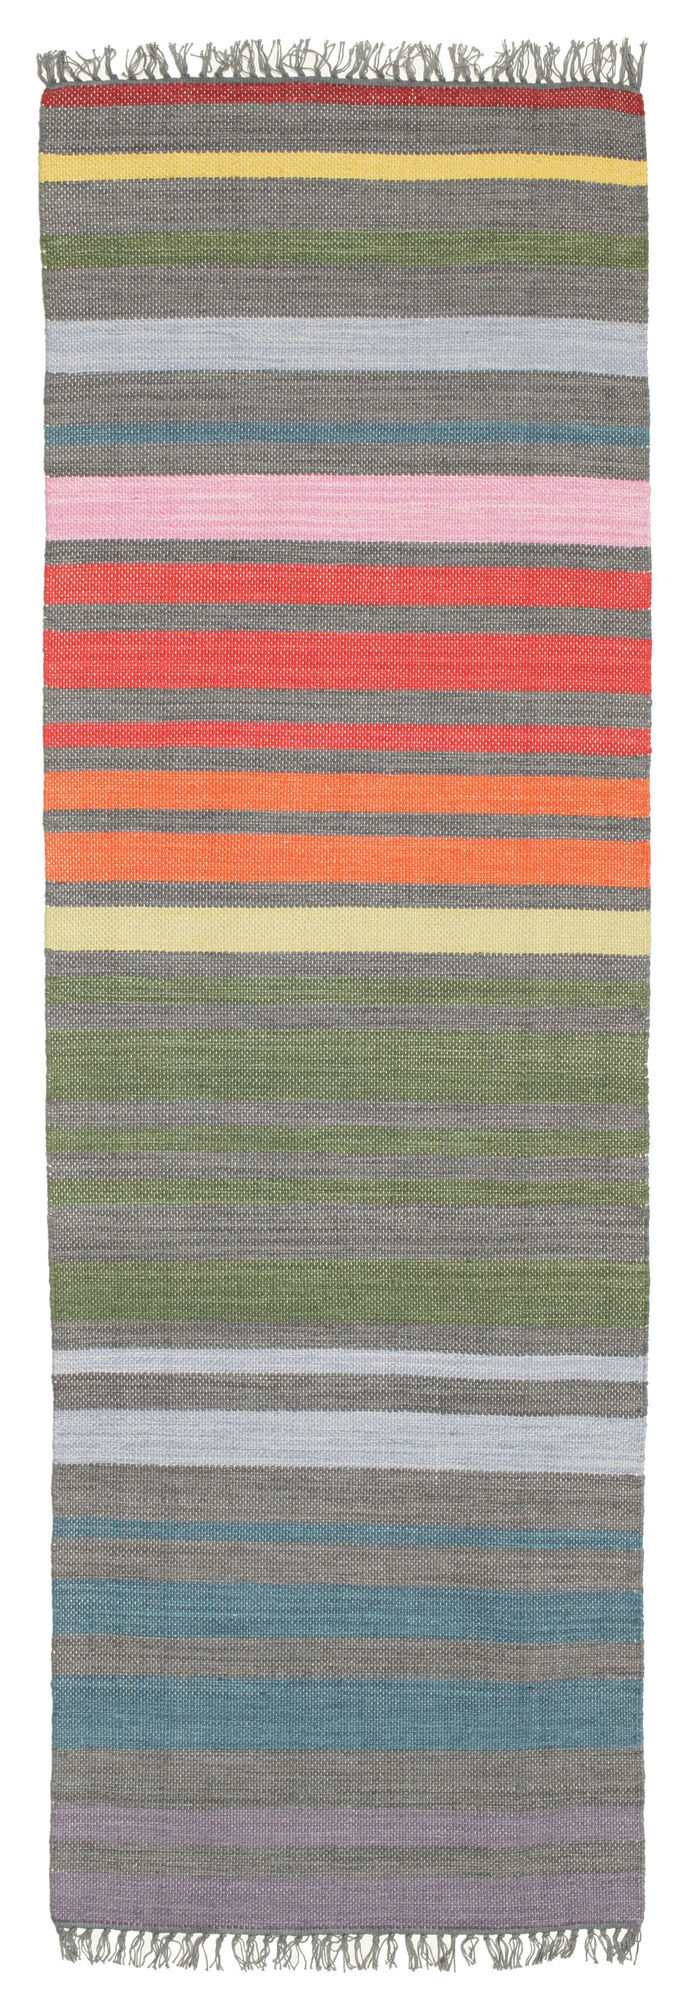 RugVista Rainbow Stripe Tappeto - Multicolore 80x250